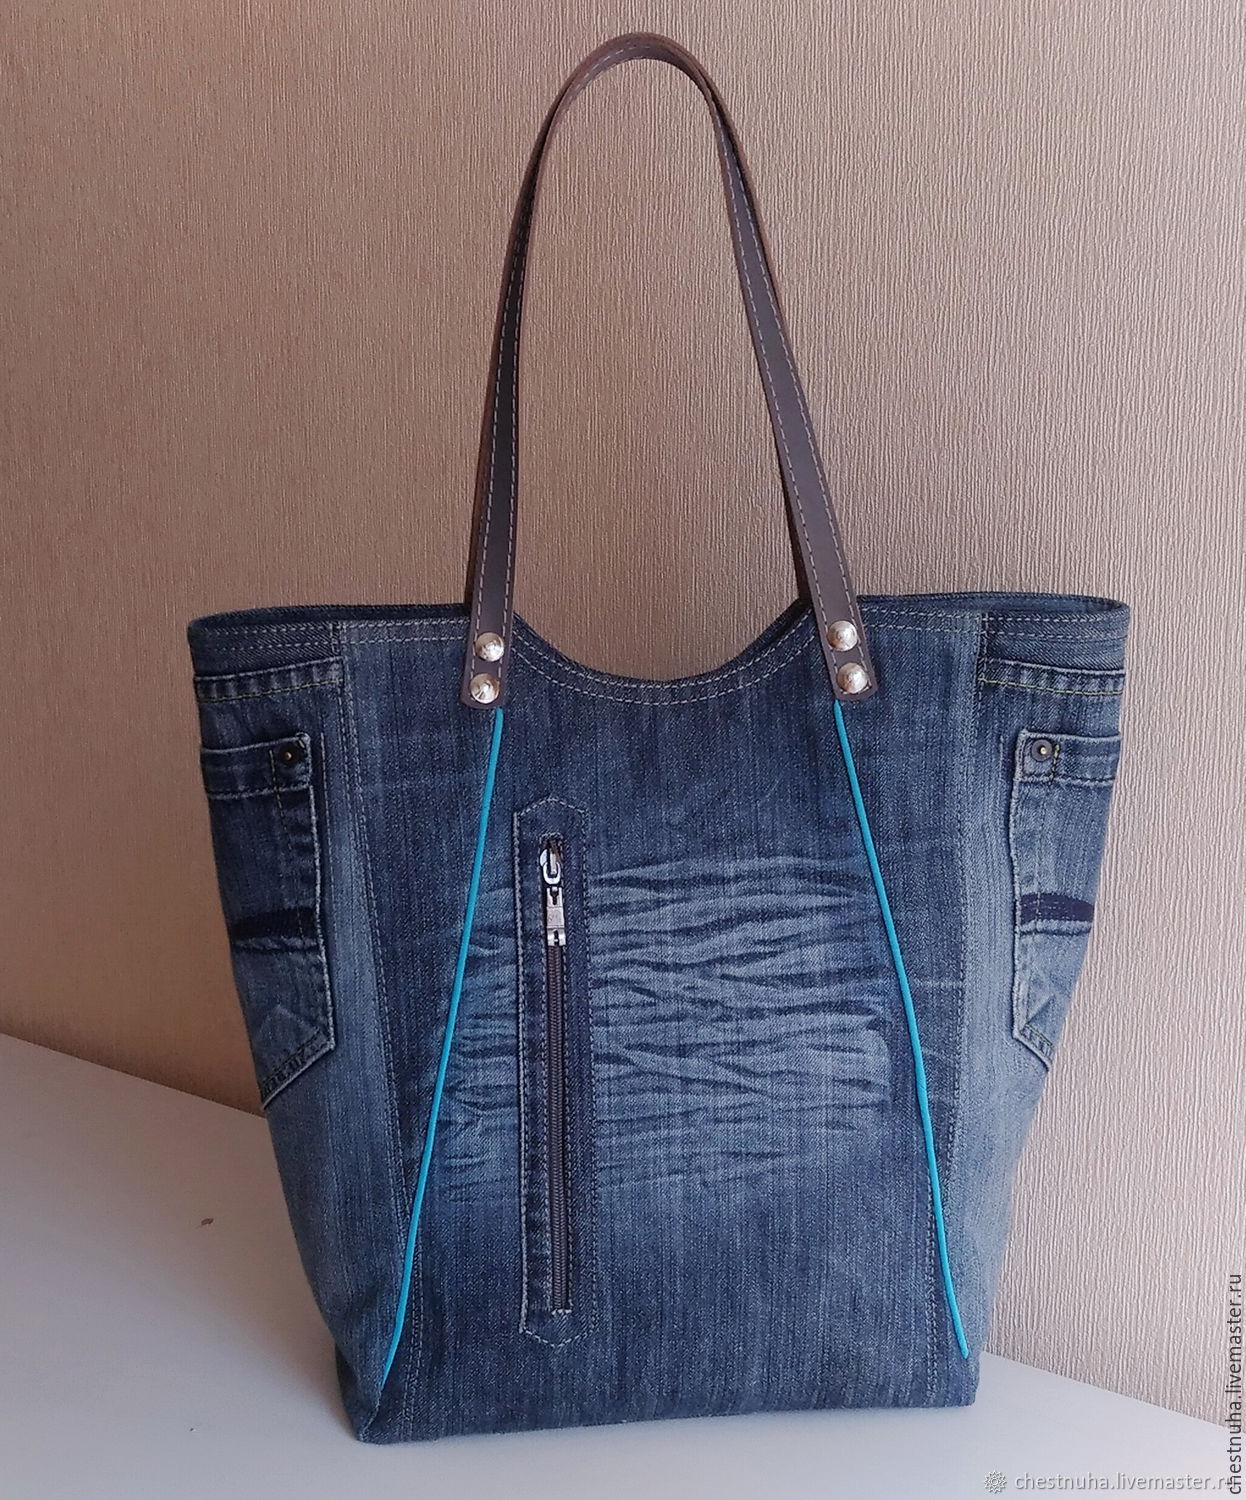 Модели сумок из джинсы